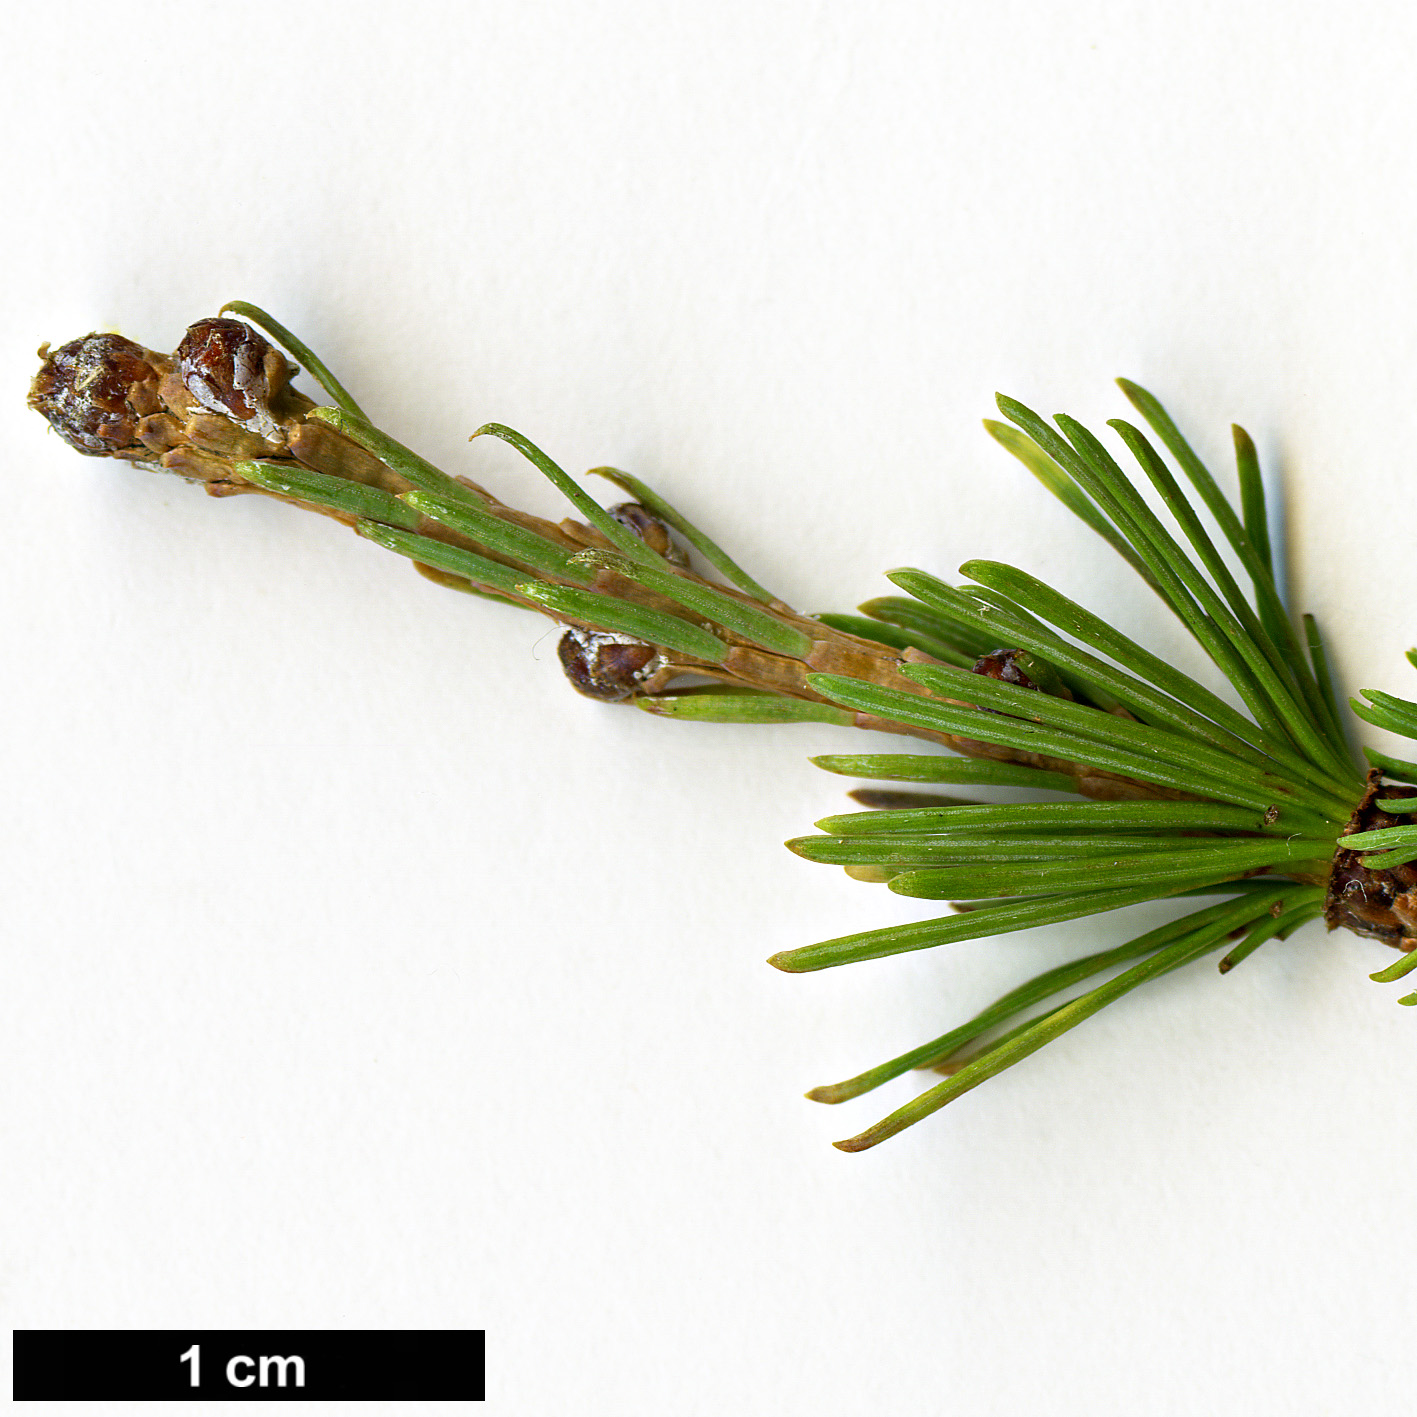 High resolution image: Family: Pinaceae - Genus: Larix - Taxon: gmelinii - SpeciesSub: var. principis-rupprechtii